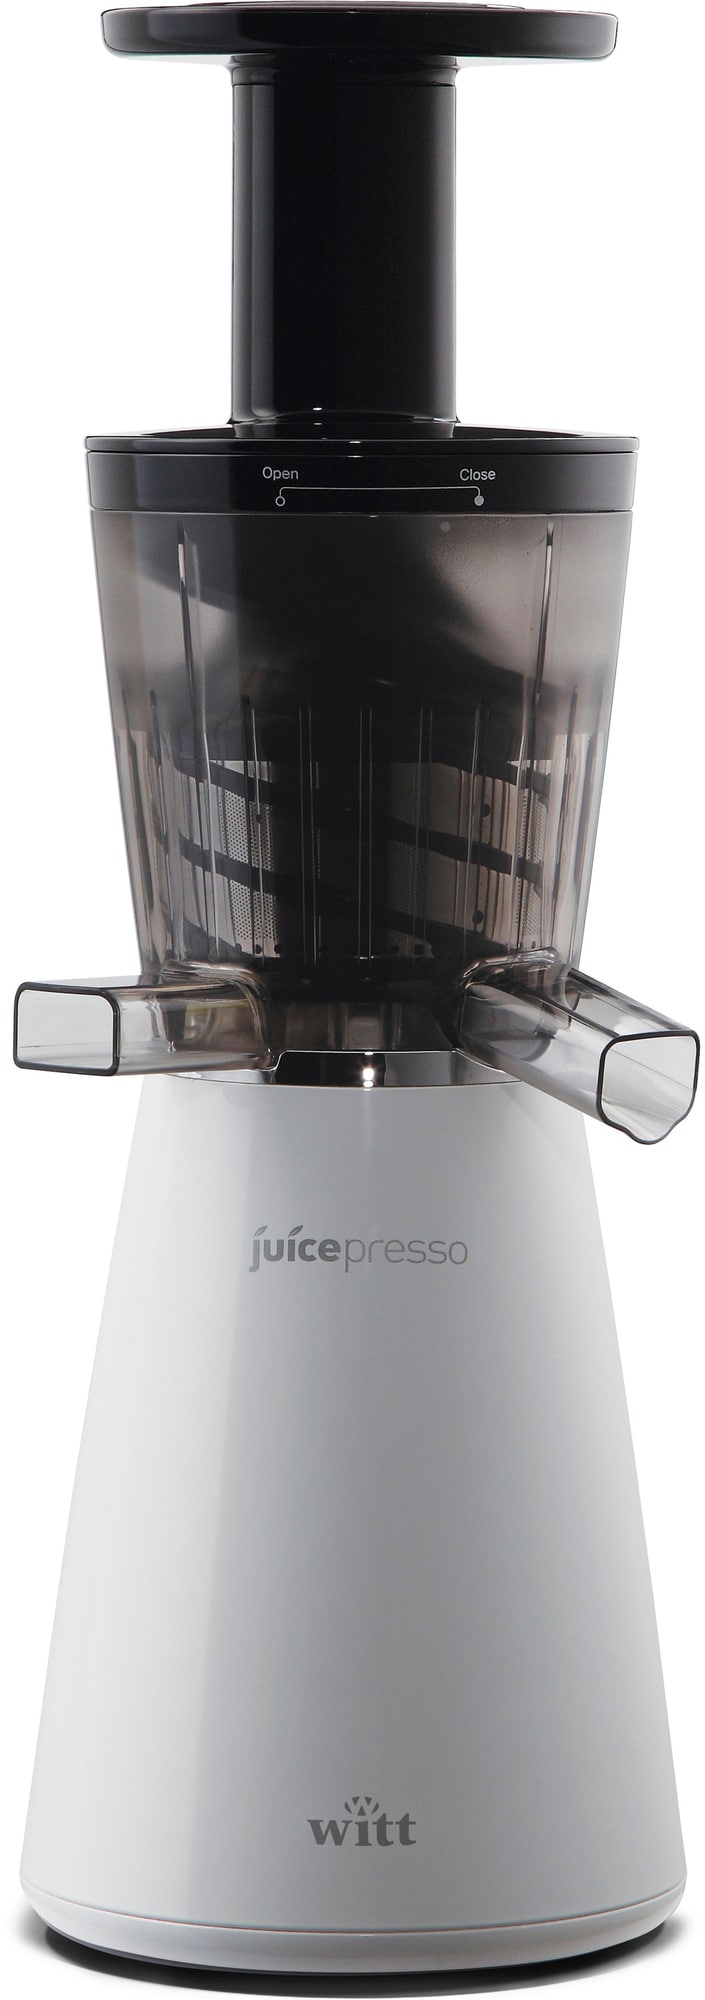 Witt Juicepresso slow juicer WJPW-1 | Elgiganten